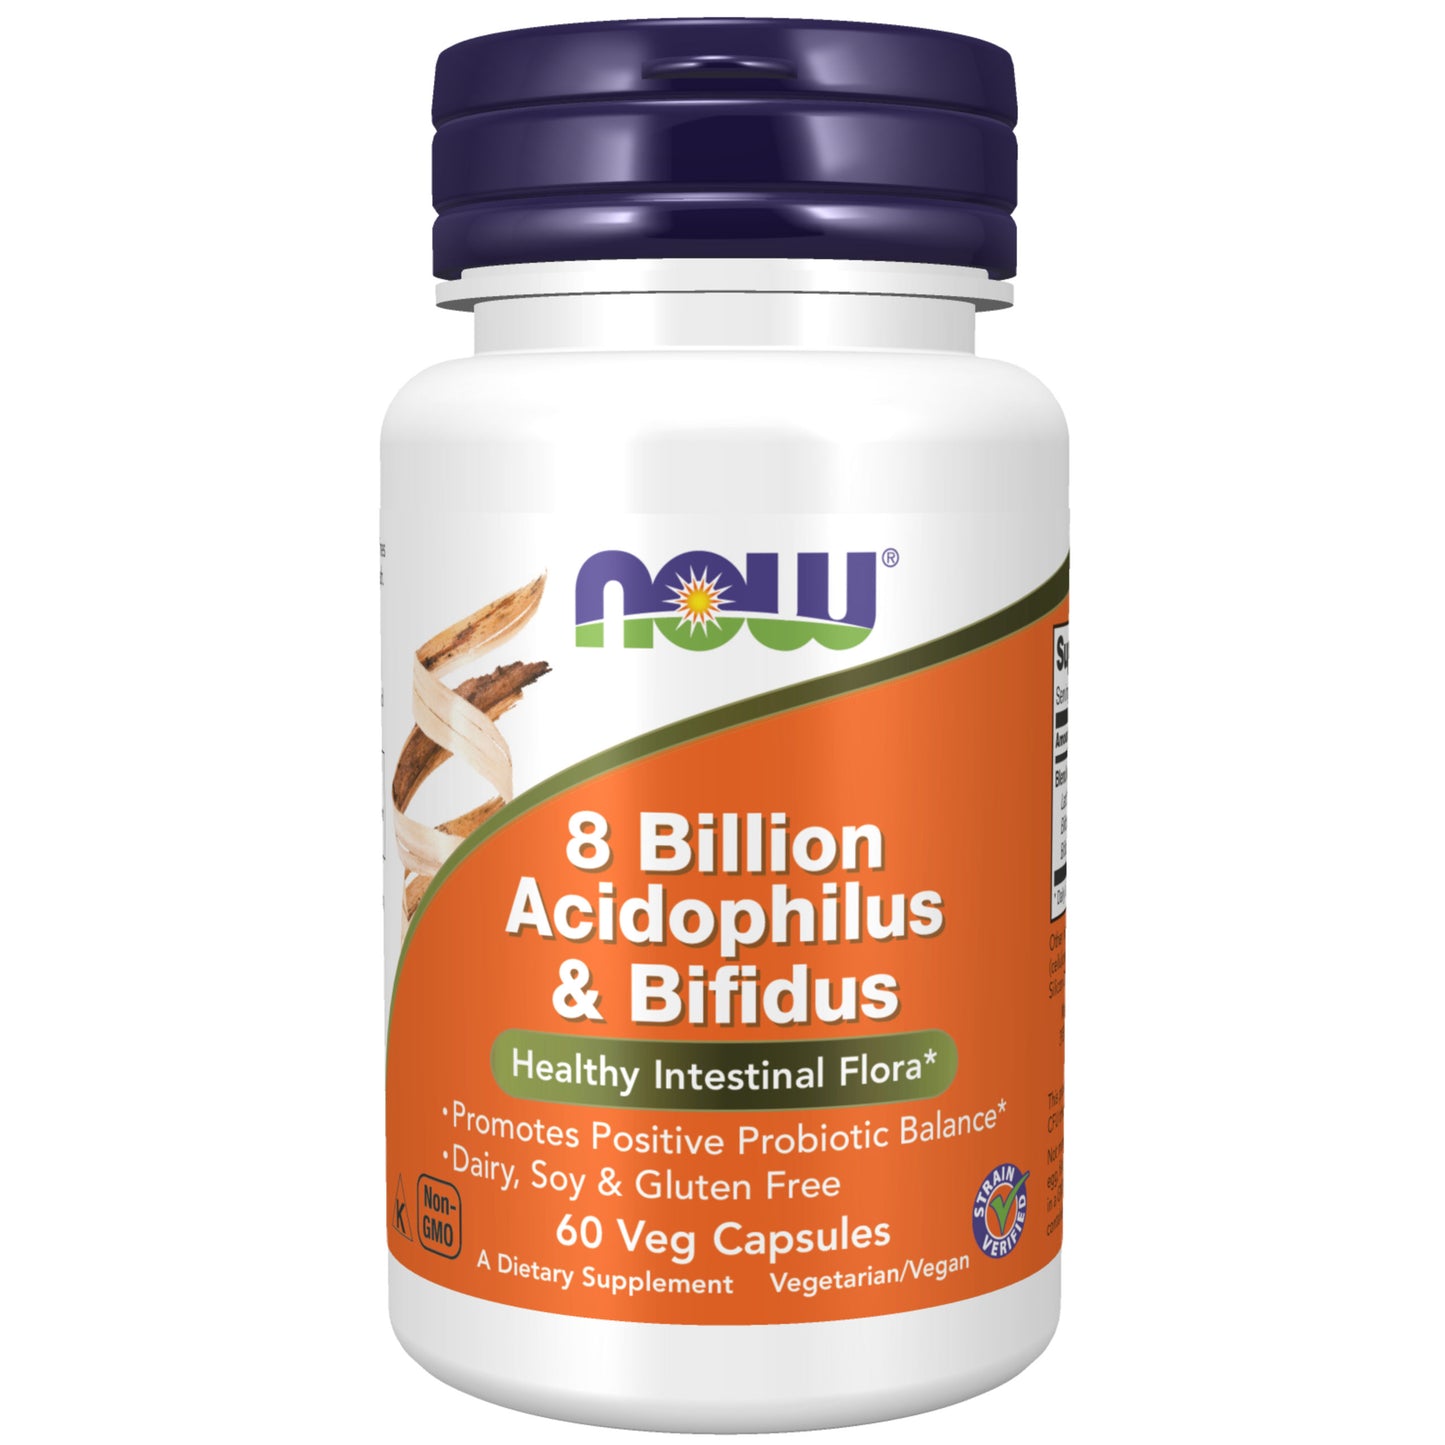 8 Billion Acidophilus & Bifidus (60 kapselia)